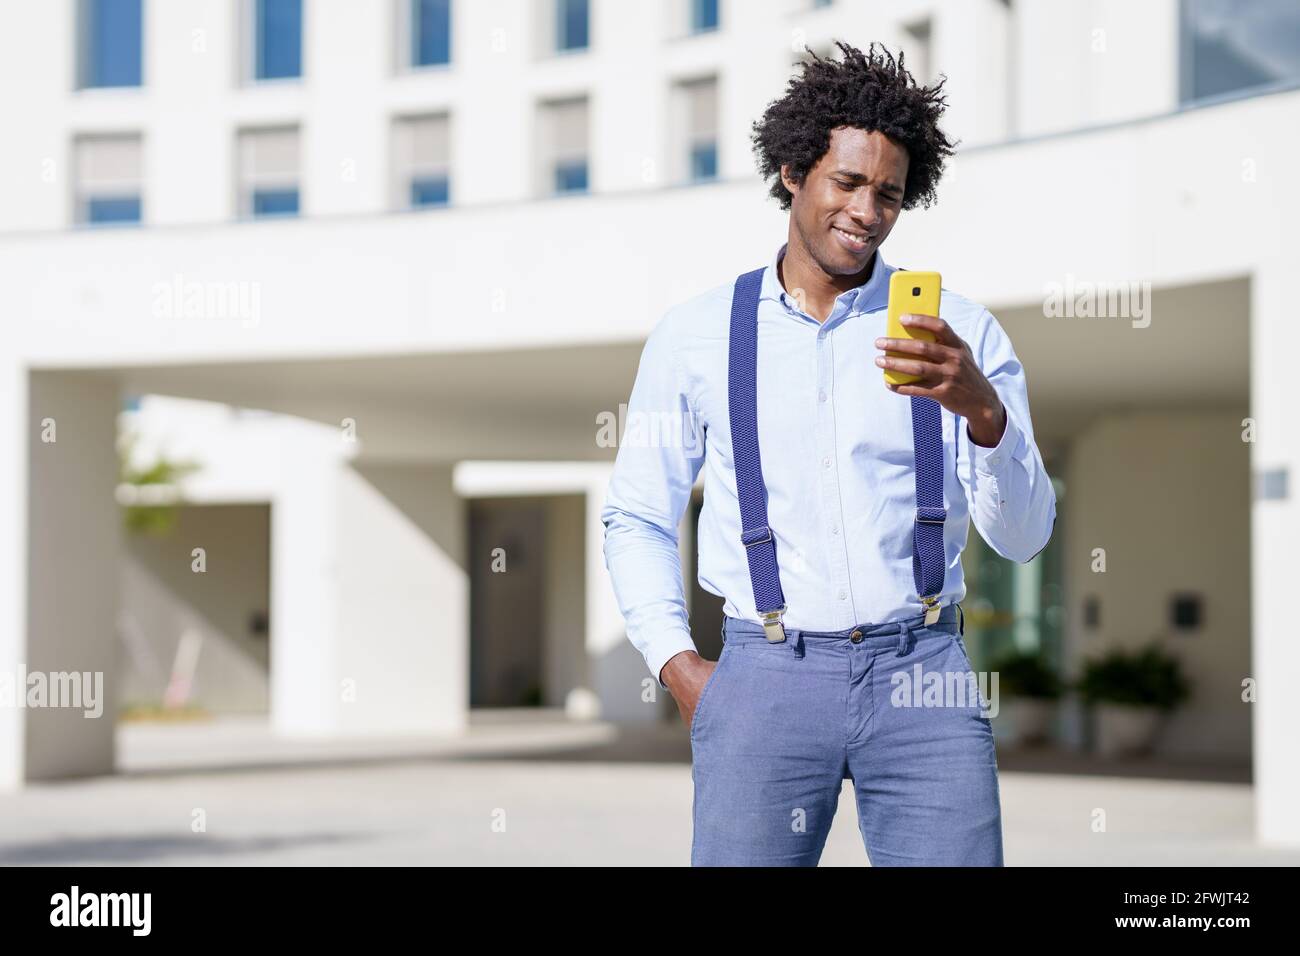 Hombre negro con peinado afro utilizando un smartphone cerca de un edificio de oficinas. Foto de stock